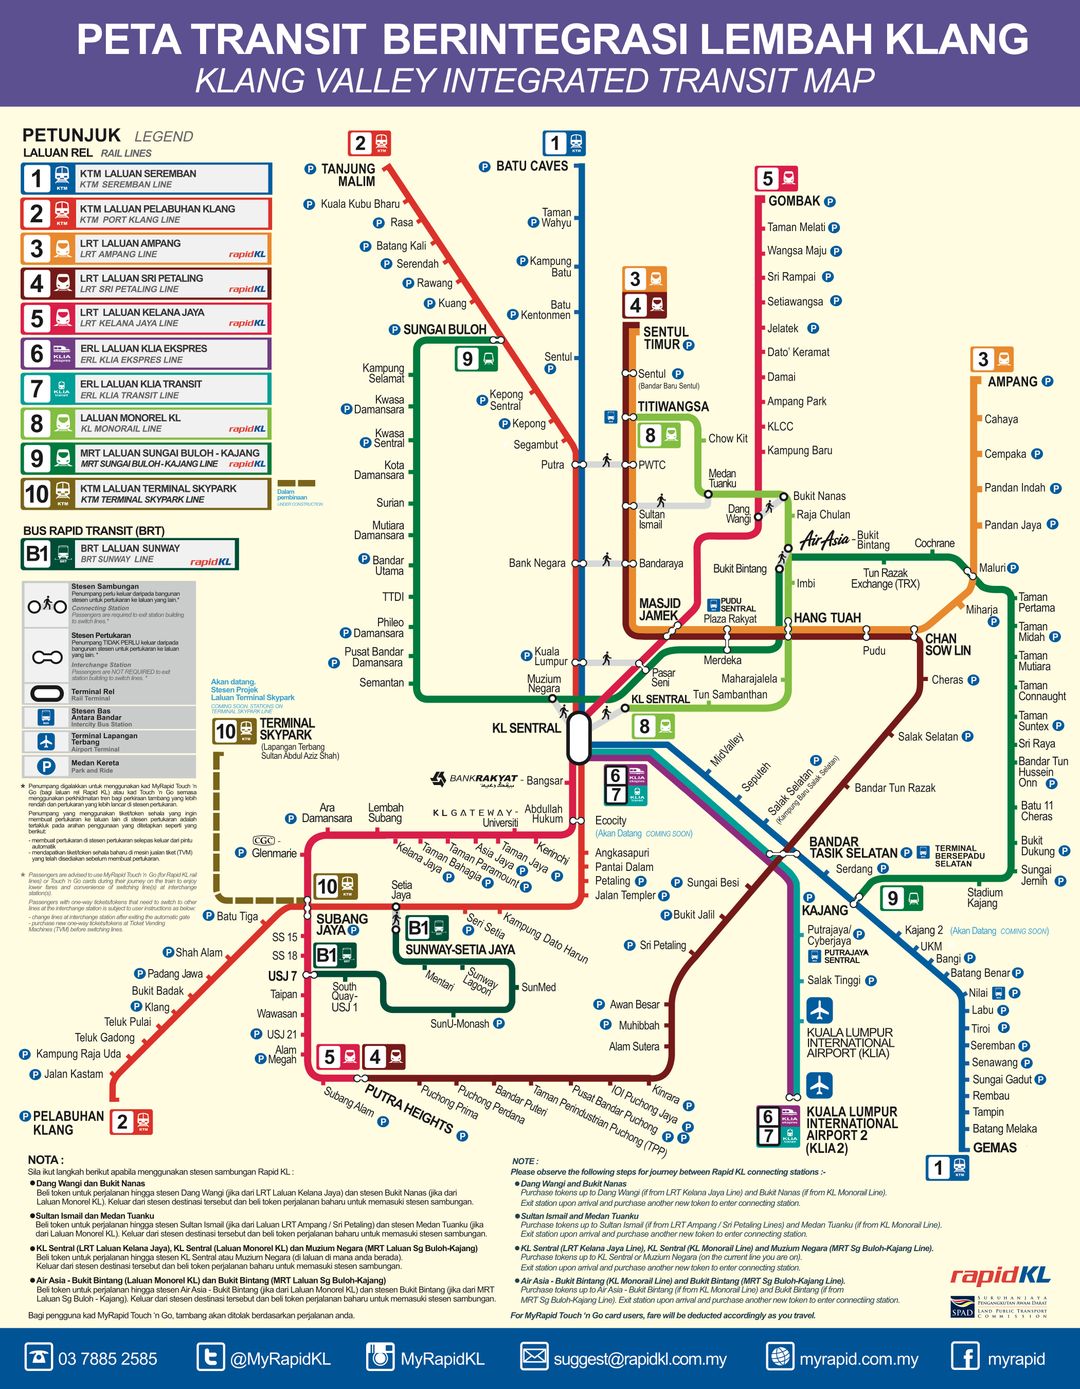 吉隆坡交通路線圖（資料來源：https://www.myrapid.com.my/default.aspx）